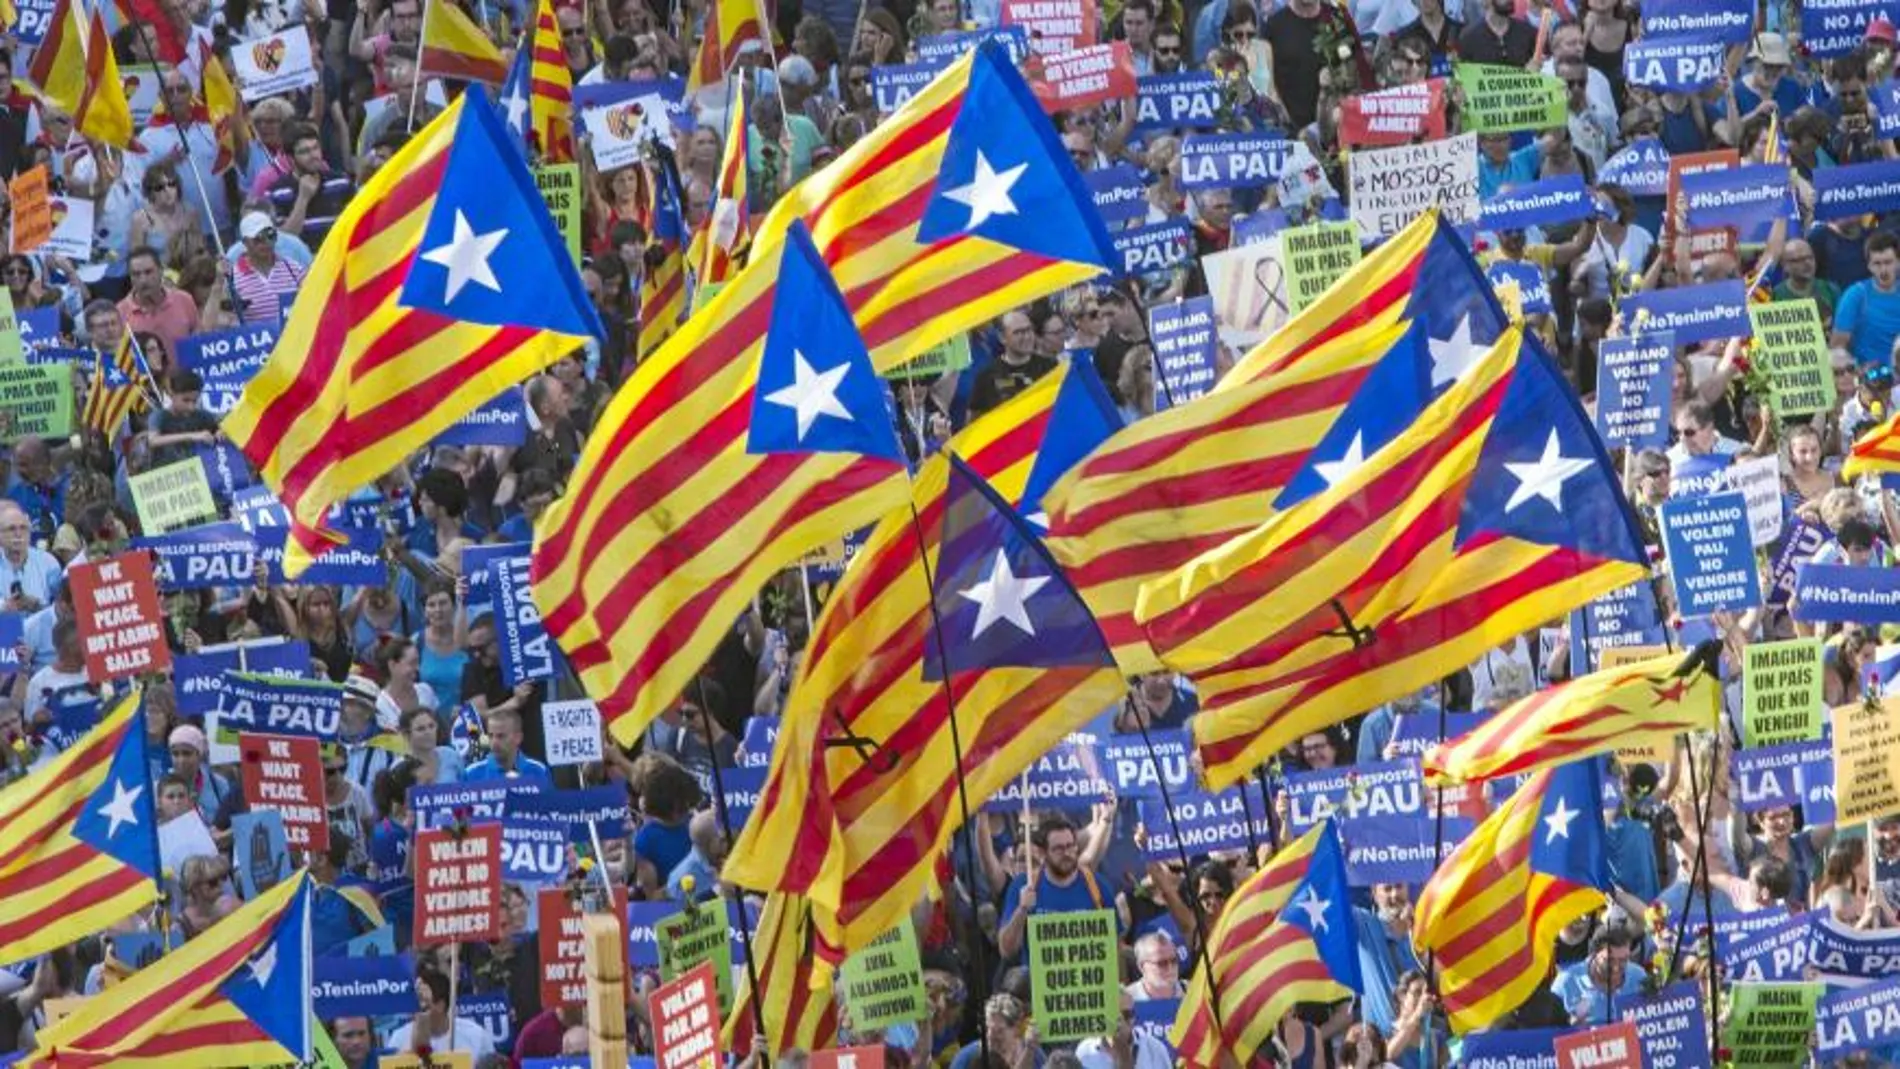 Las «estelades» se impusieron en la guerra de banderas librada en el paseo de Gràcia